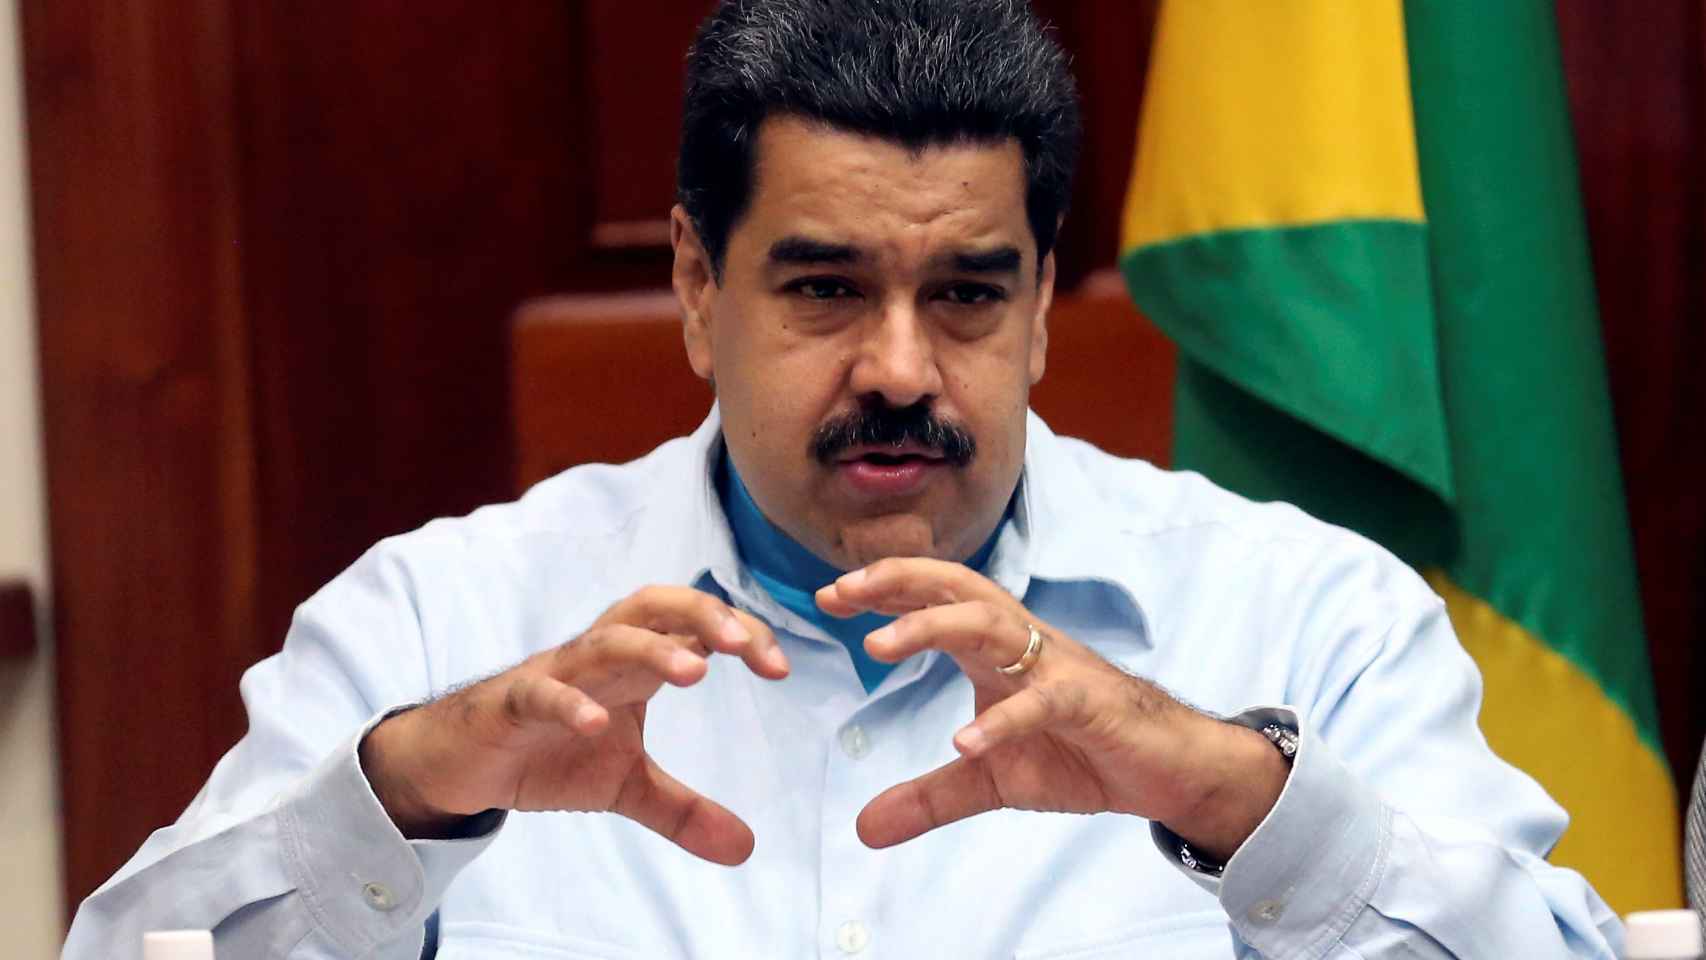 Nicolás Maduro durante un encuentro en Venezuela con el Primer Ministro de Jamaica.